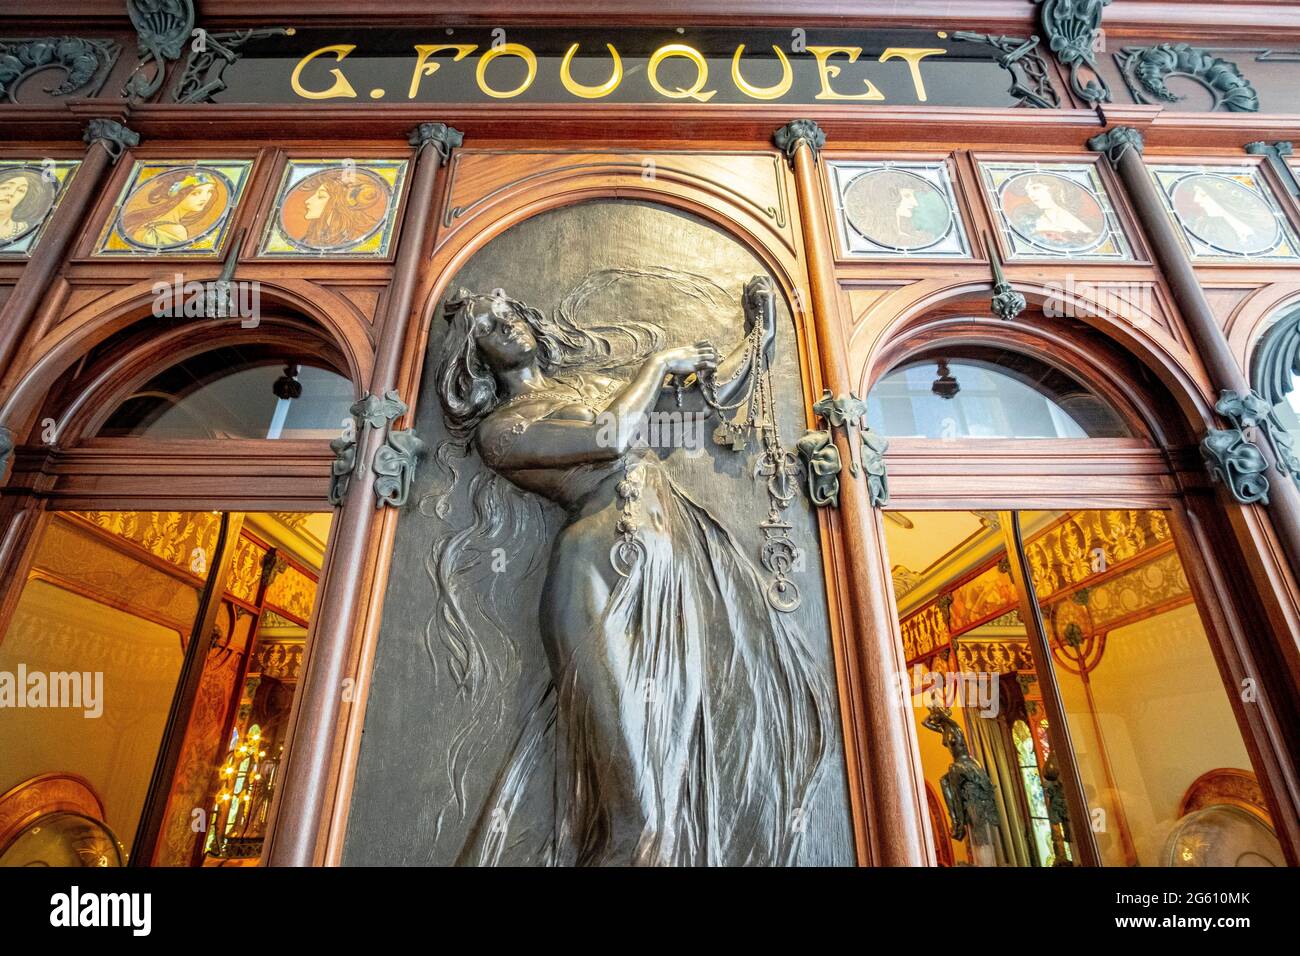 Frankreich, Paris, das Carnavalet-Museum, La bijouterie Fouquet war ein Geschäft in Paris, dessen Front und Interieur 1901 von Alfons Mucha im Jugendstil gefertigt wurden, 1923 zerlegt, der Schmuck wurde im Museum wieder zusammengesetzt Stockfoto